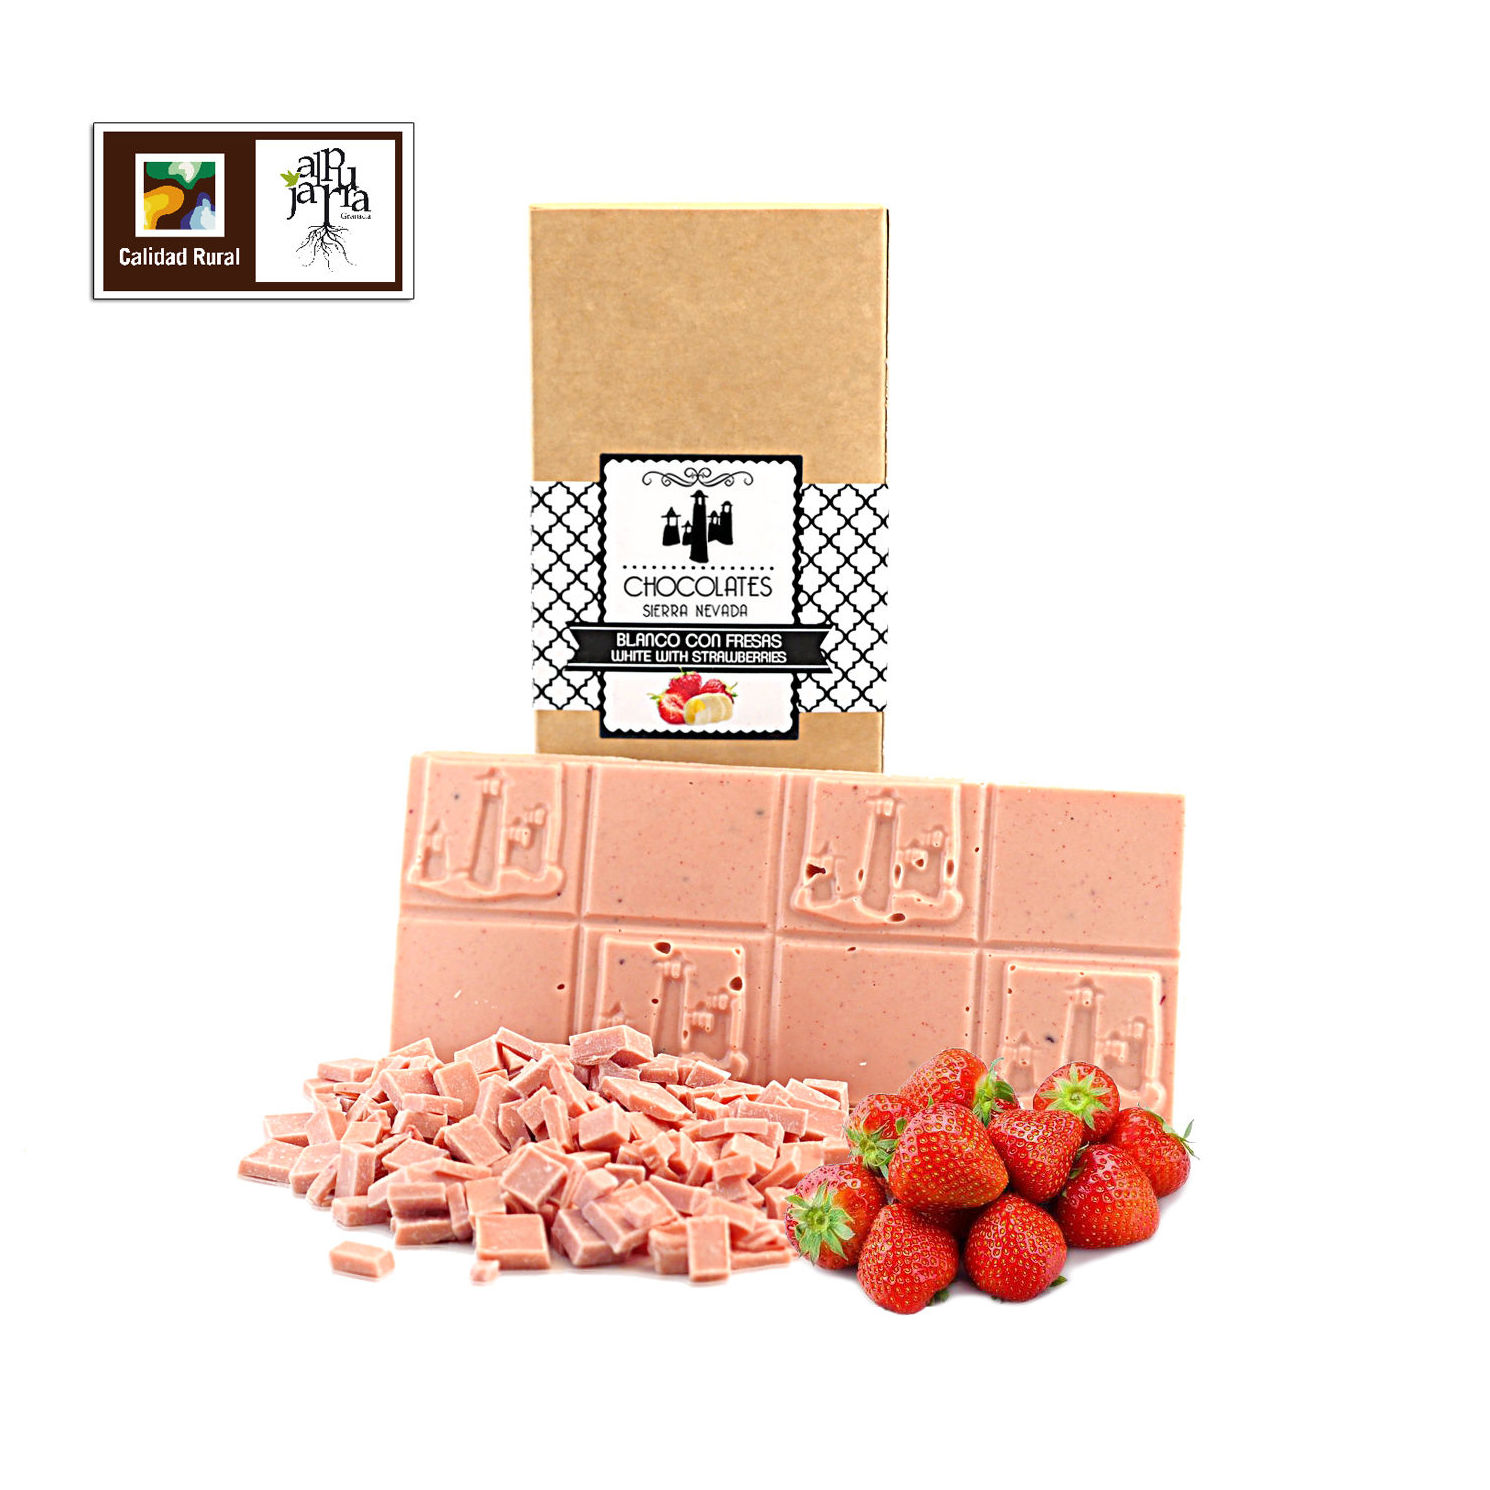 Tableta artesana de chocolate blanco con fresas: Nuestros productos de Chocolates Sierra Nevada